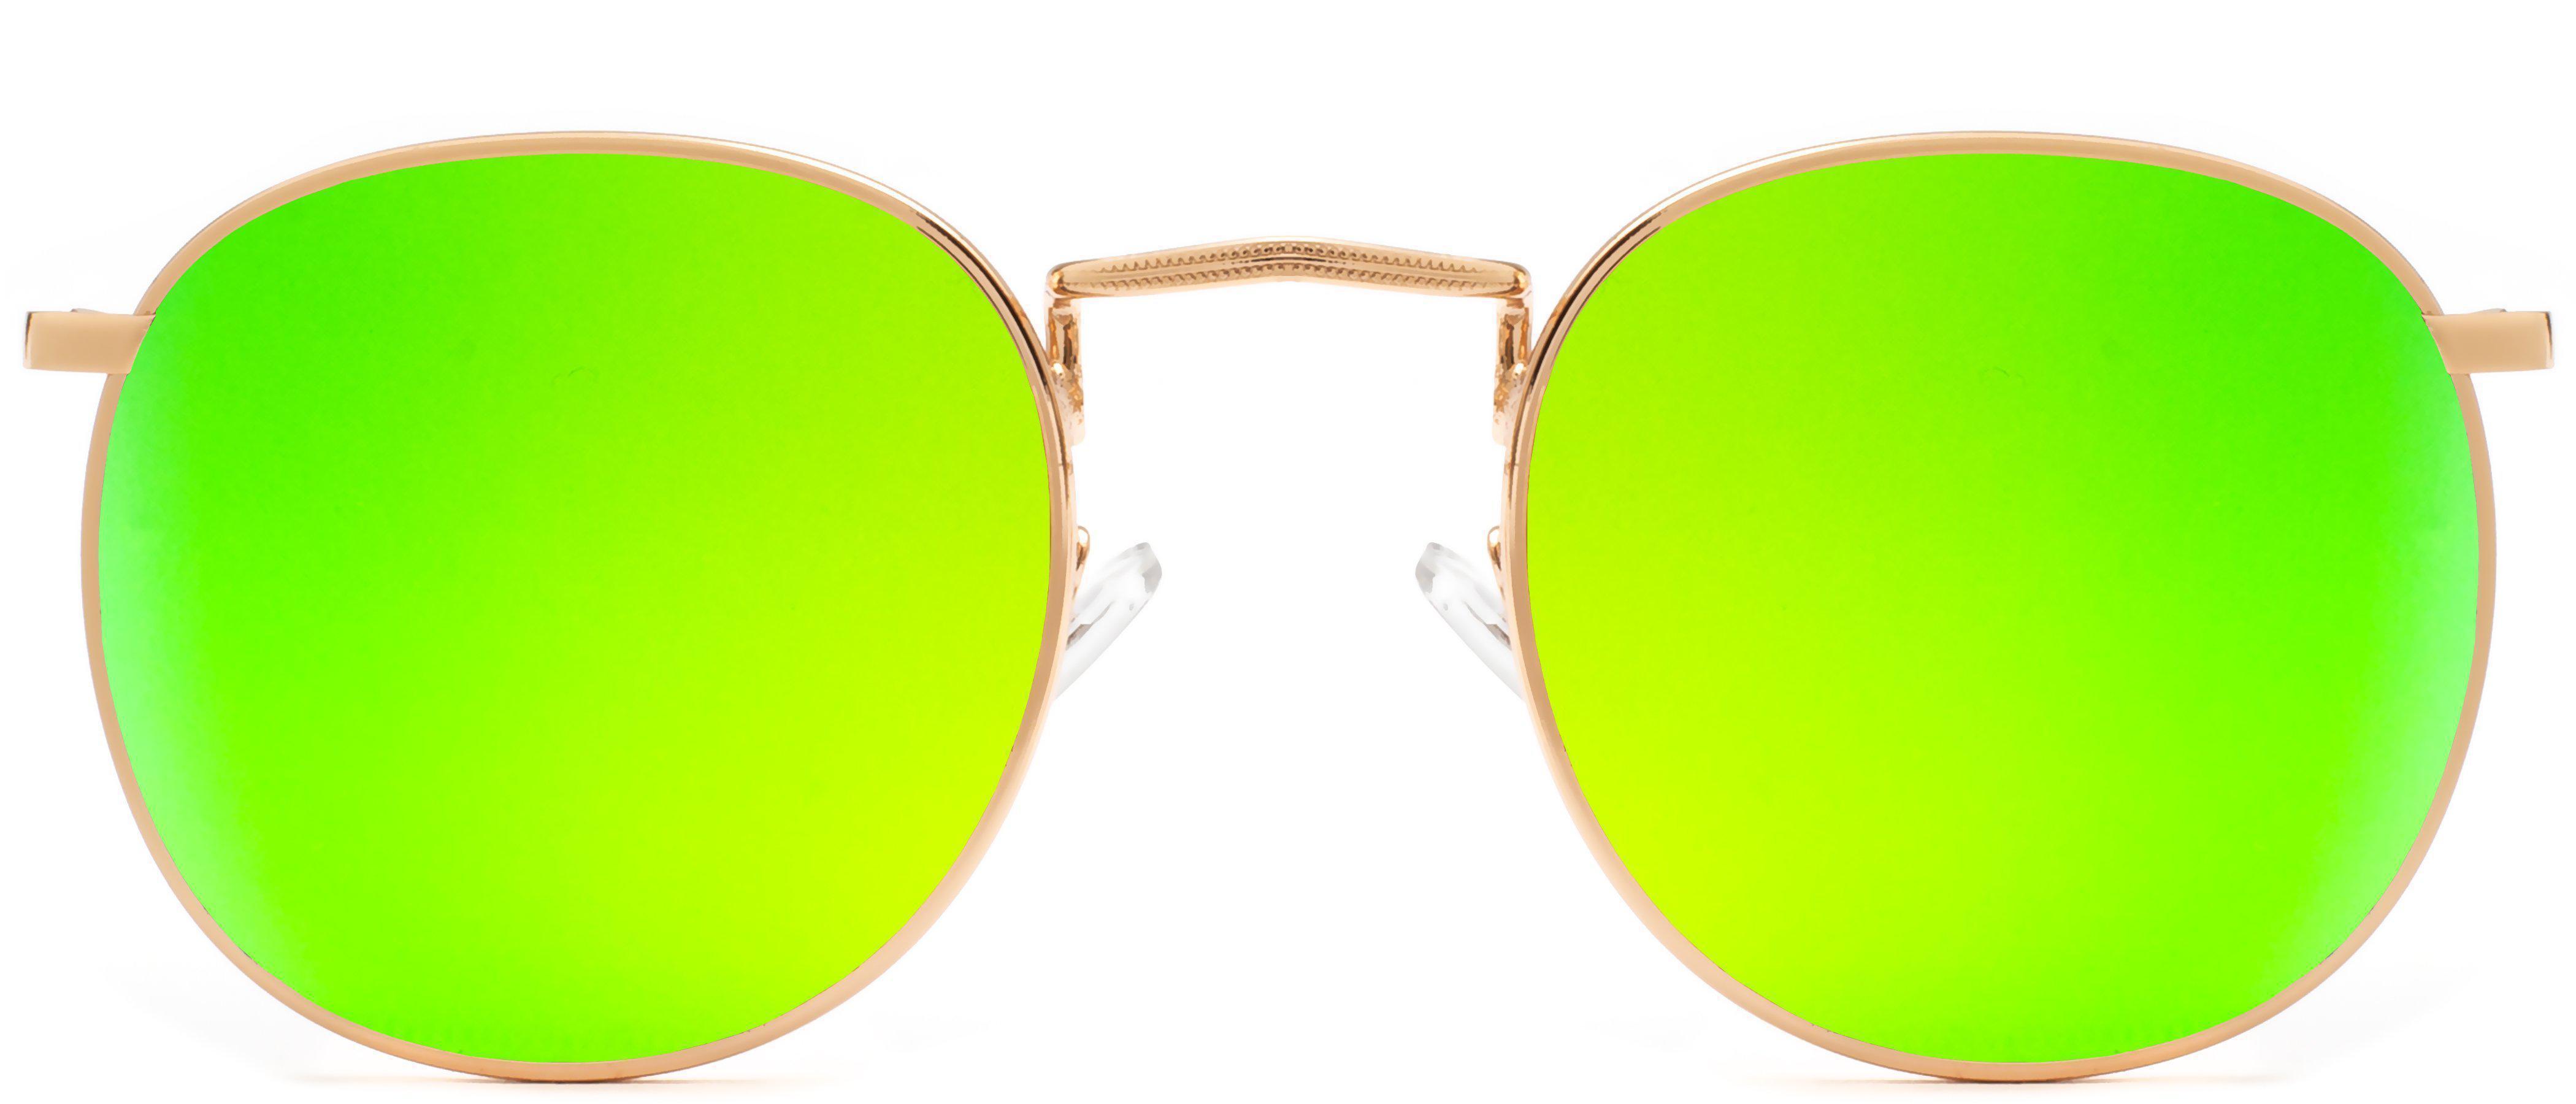 Buy Elton Street Vintage Round Non-Polarized Sunglasses Online - NYS  Collection Eyewear